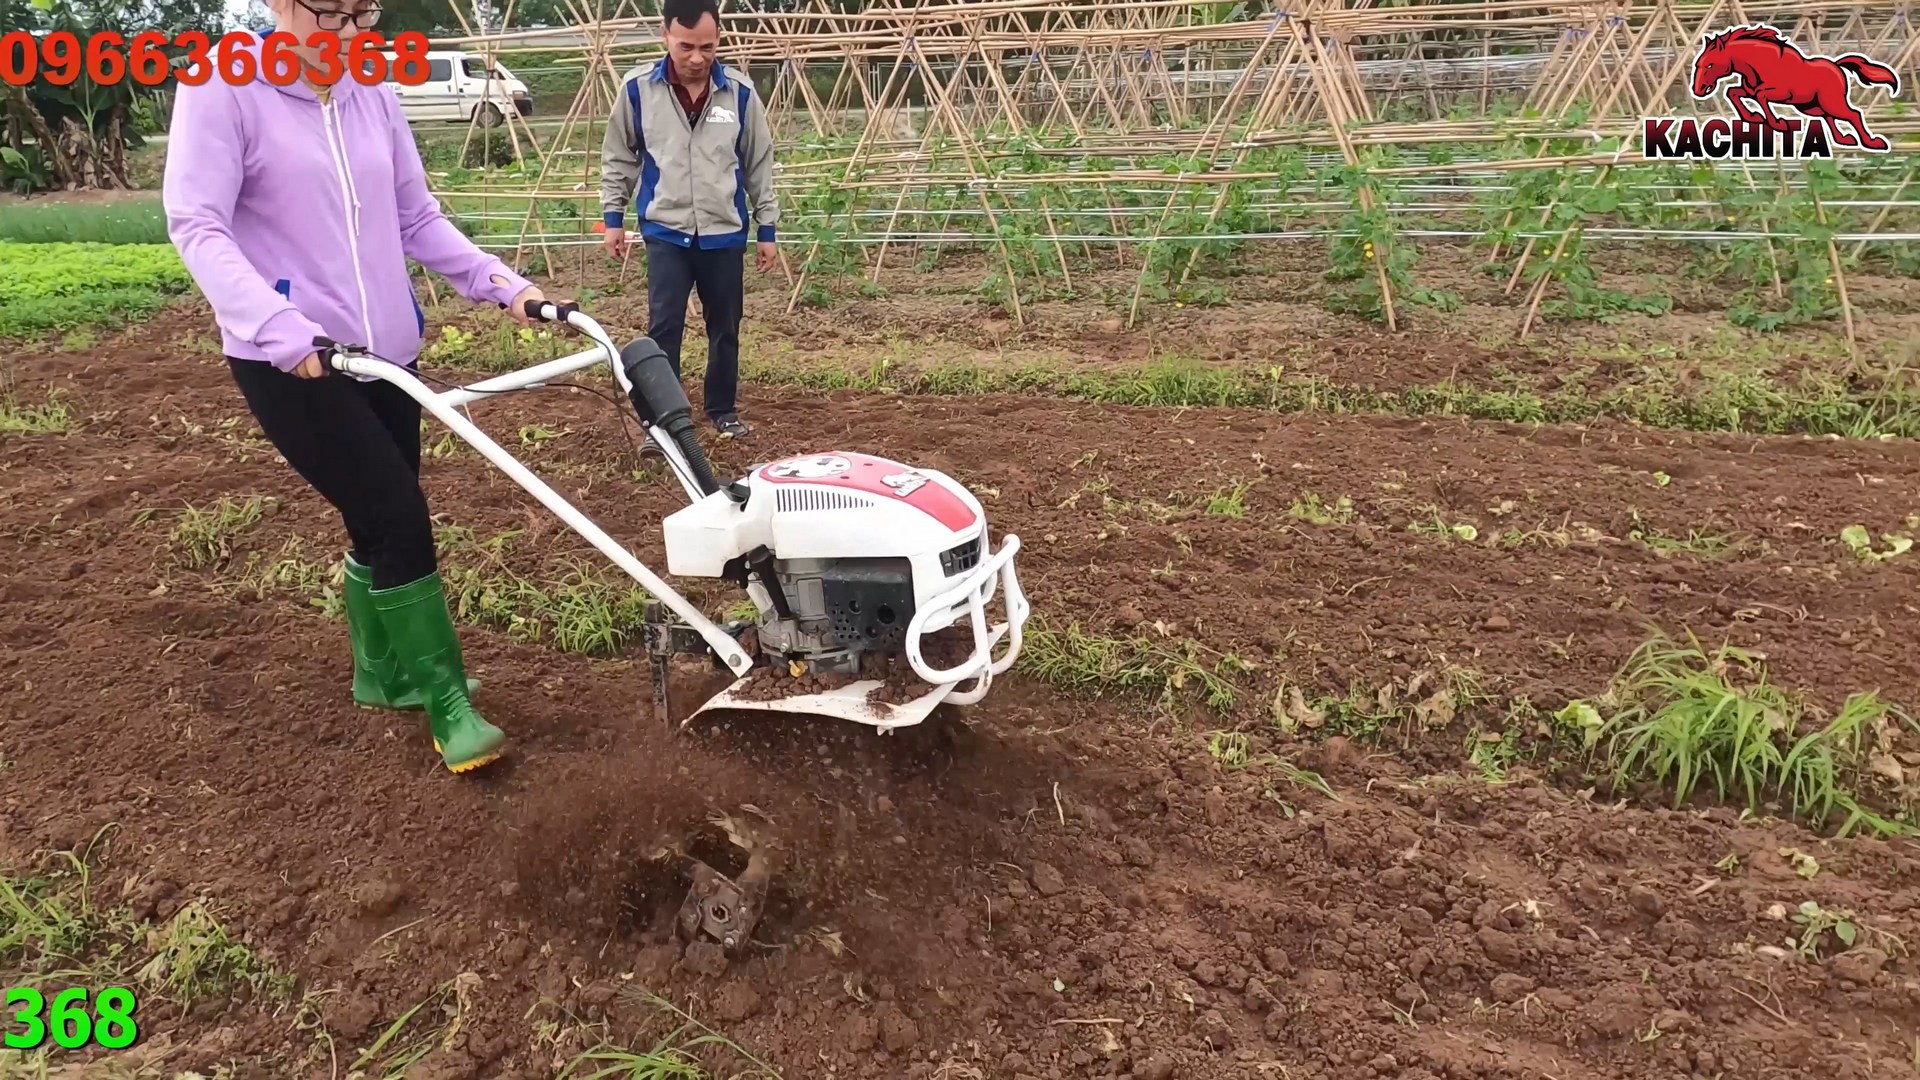 Xới vườn rau bằng máy xới đất kachita 3tgq2